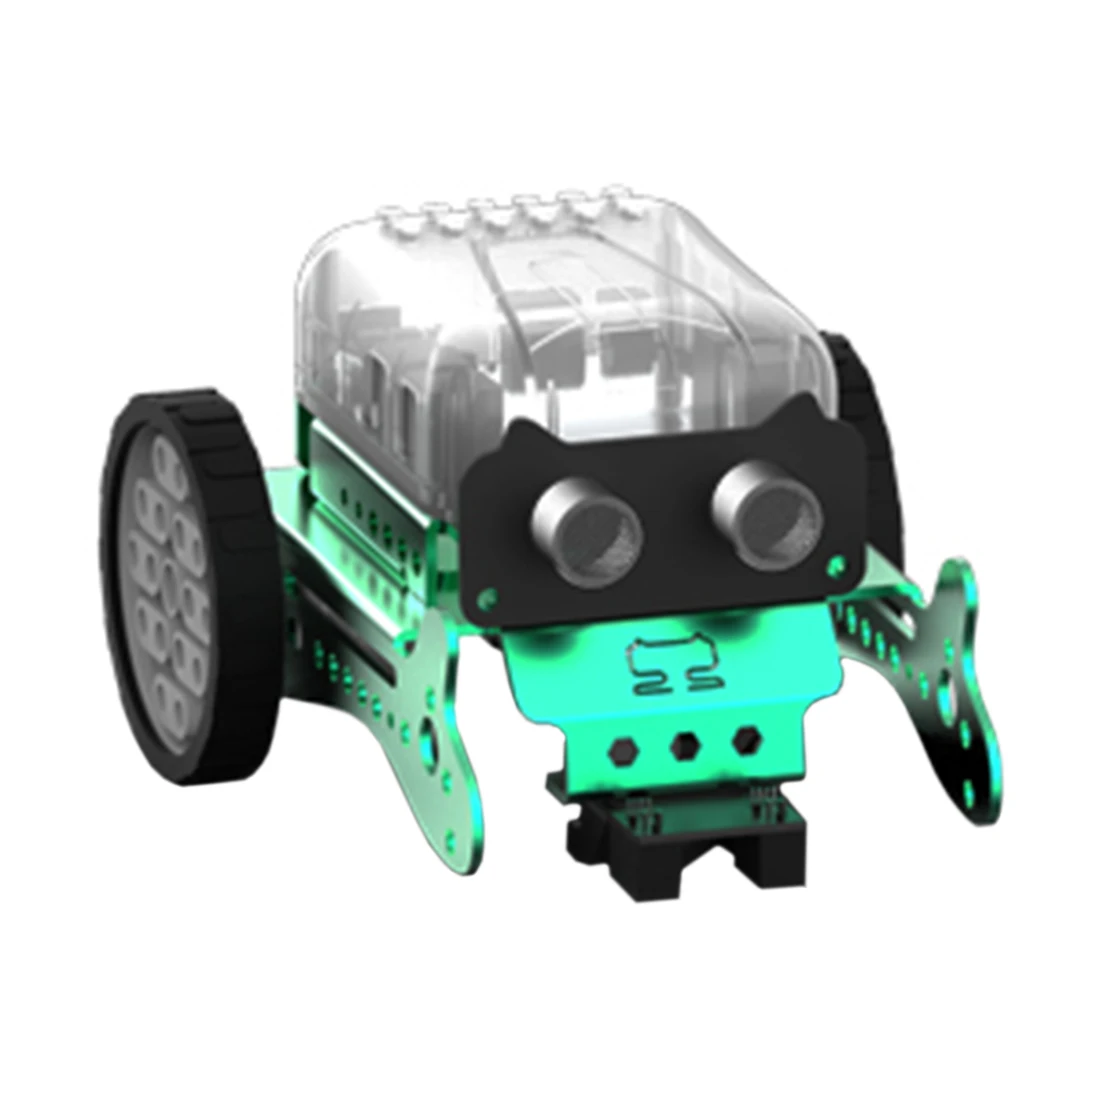 Bricolage Neo programmation Scratch Intelligent évitement d'obstacles voiture Robot Kit cerveau-formation jouet pour enfants éducation jouet-vert rouge